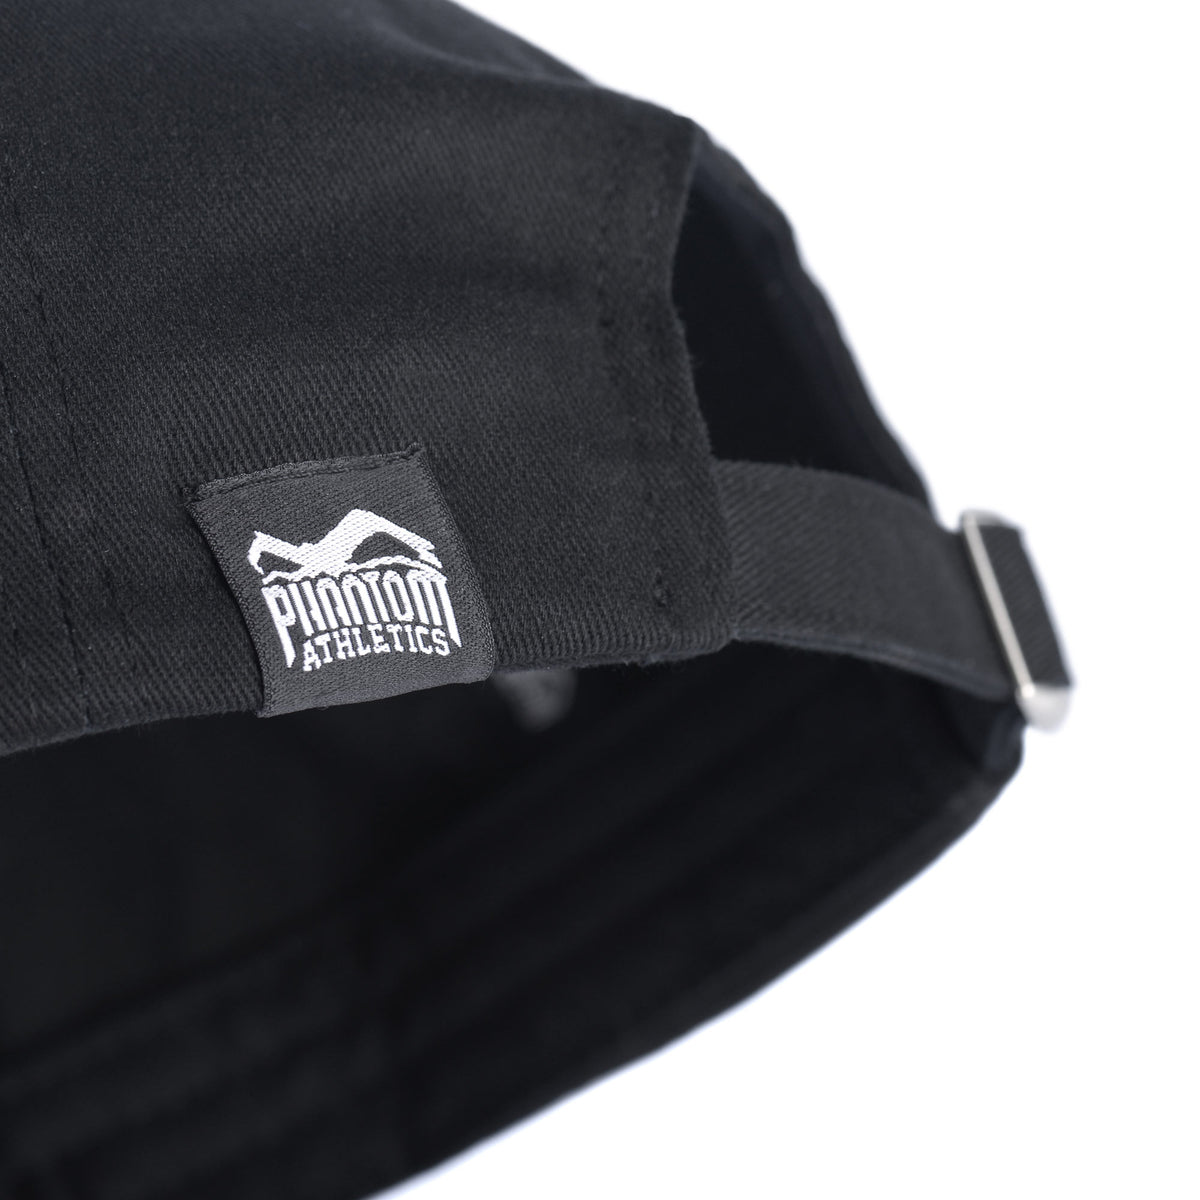 Phantom Cap für Kampfsportler. 5-Panel Trucker Style Cap in schwarz mit gebogenem Schirm und hochwertig gesticktem Phantom Athletics Logo. Ideal für alle MMA Kämpfer, Boxer, BJJ Kämpfer, Thaiboxer oder Kickboxer.